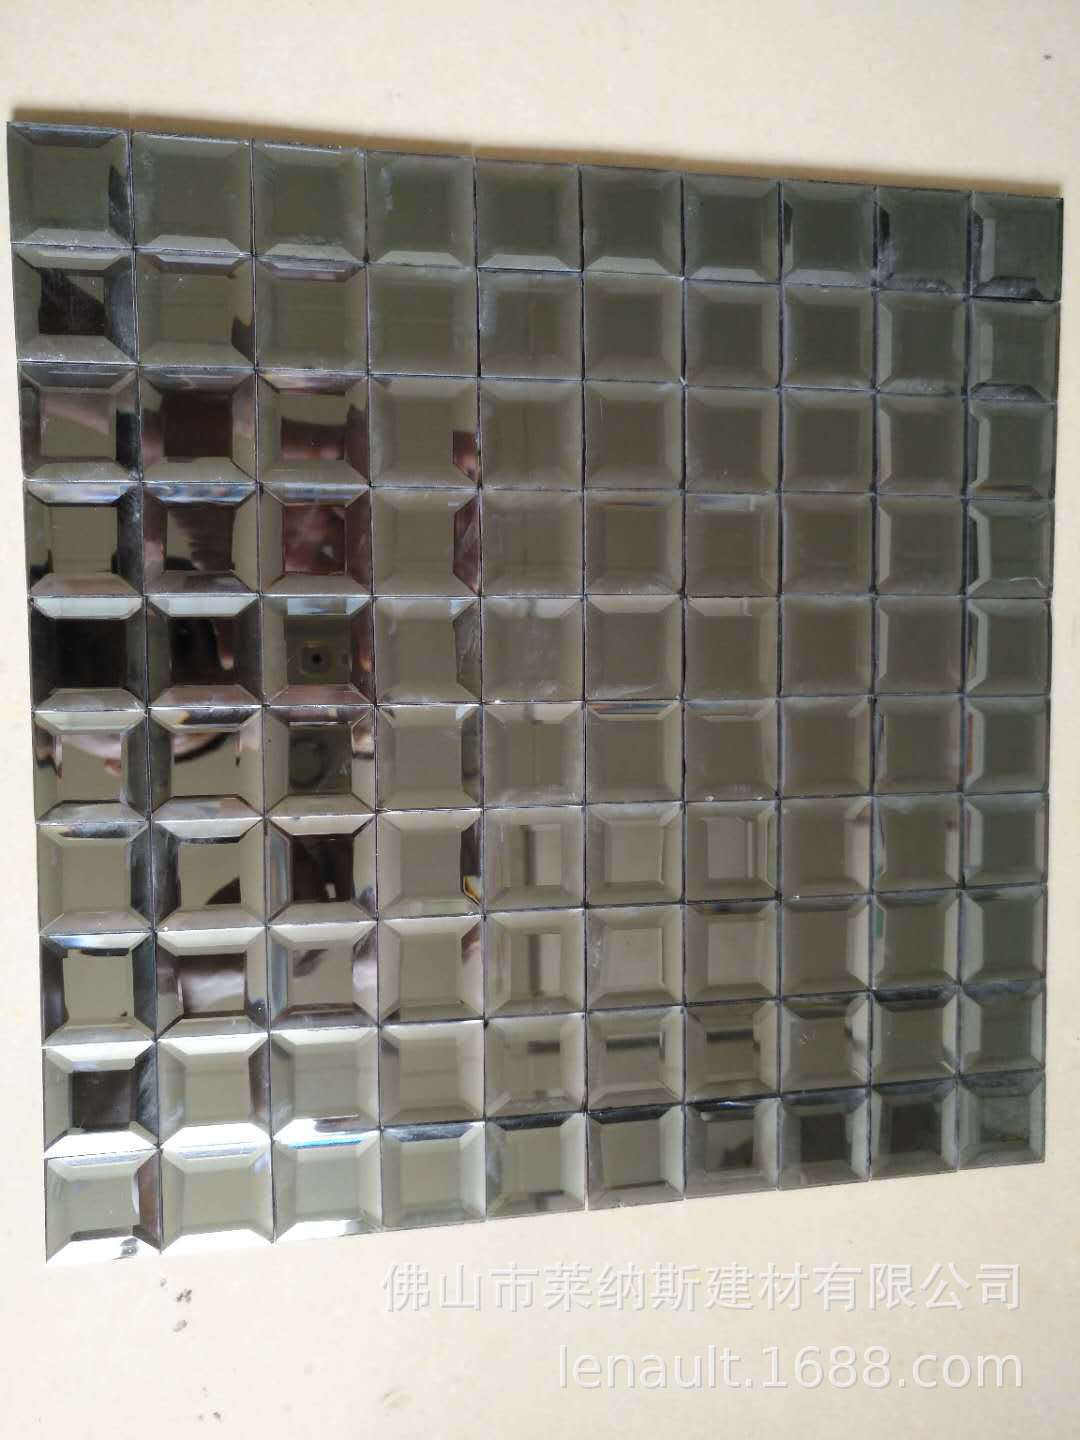 【莱纳斯】磨边镜面玻璃马赛克 五面镜 瓷砖墙贴马赛克电视背景墙